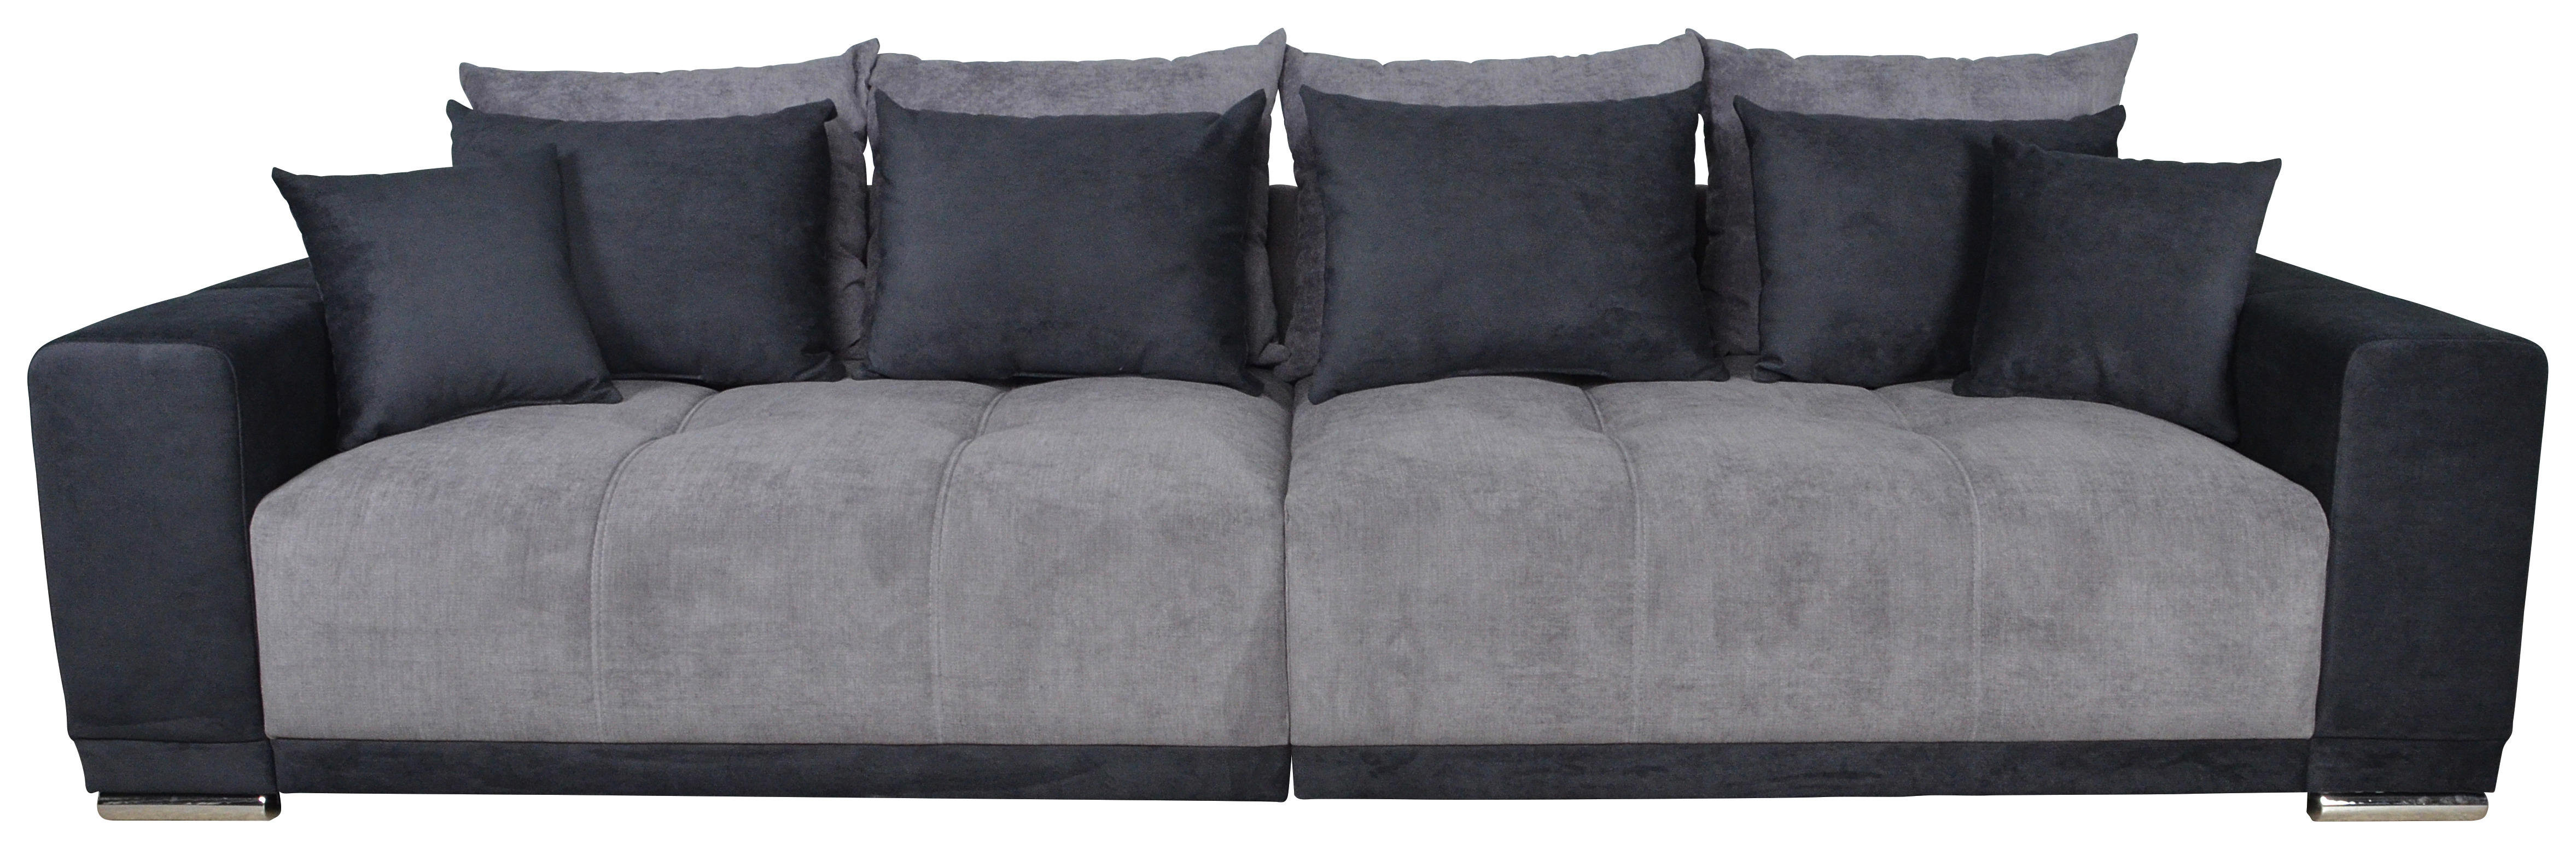 Big Sofa Xantia Grau T: Ca. 120 Cm Xantia - Chrom/grau (120,00cm)